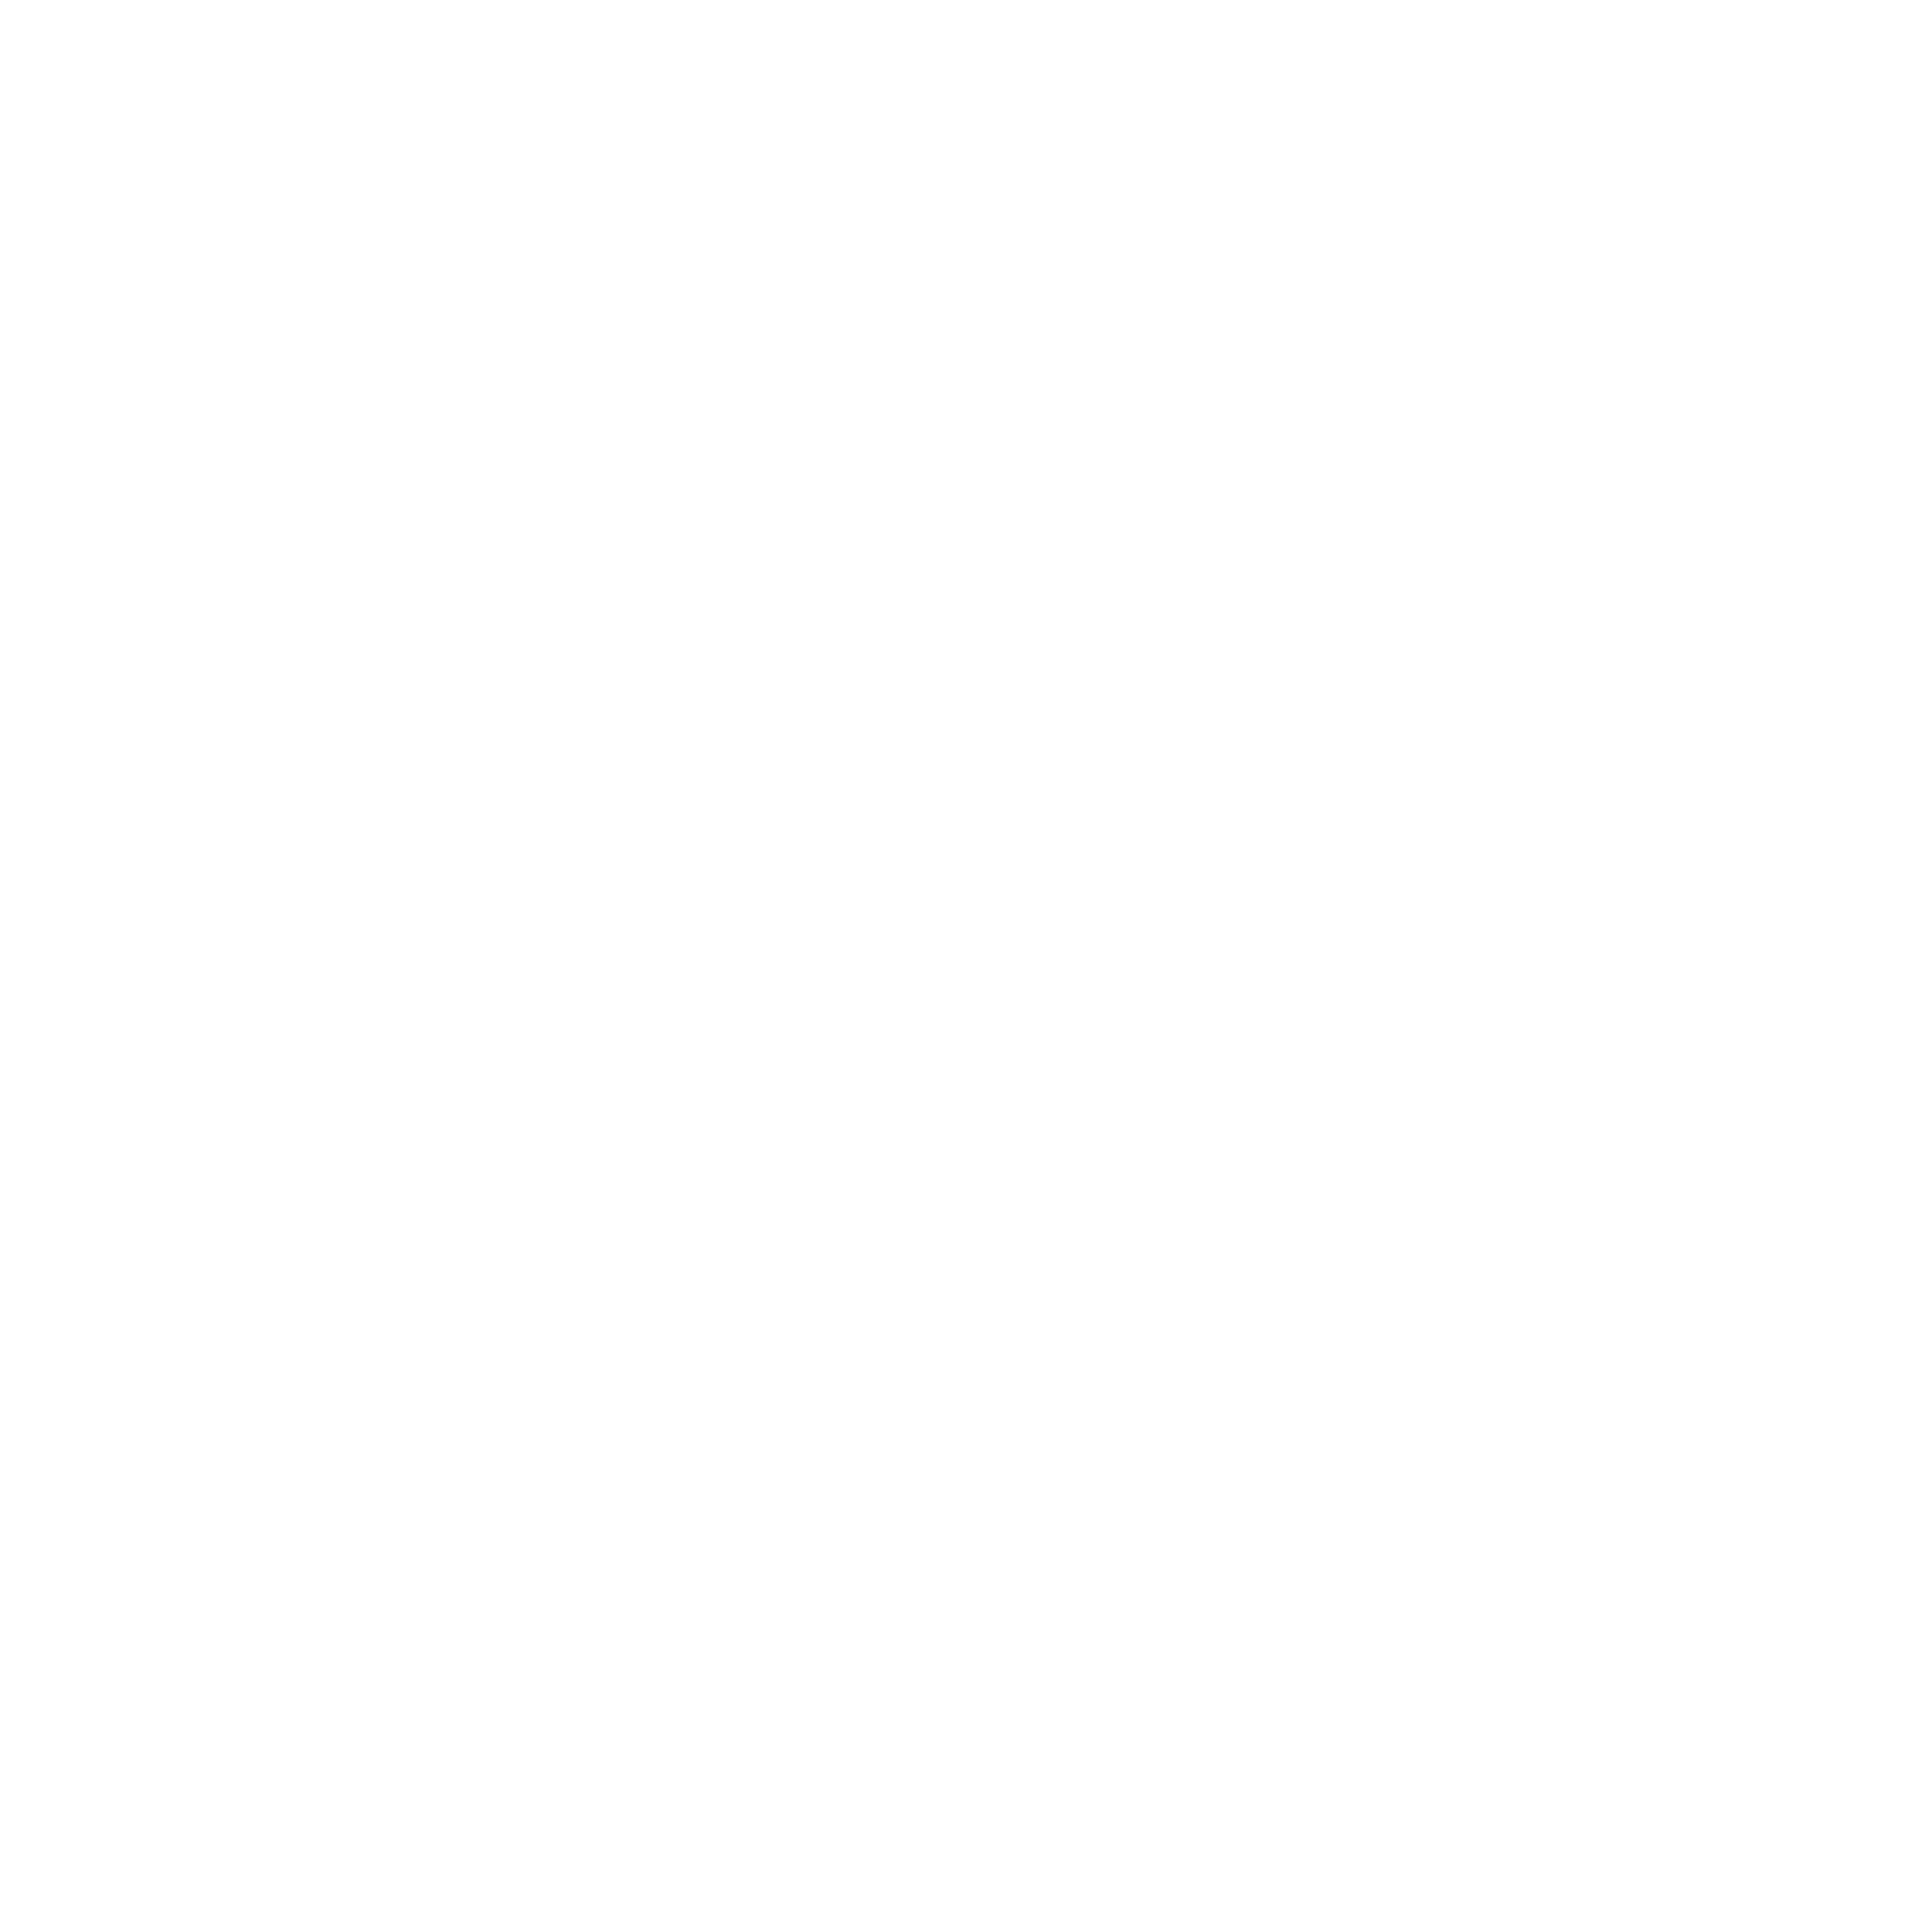 Sebastian Susanto